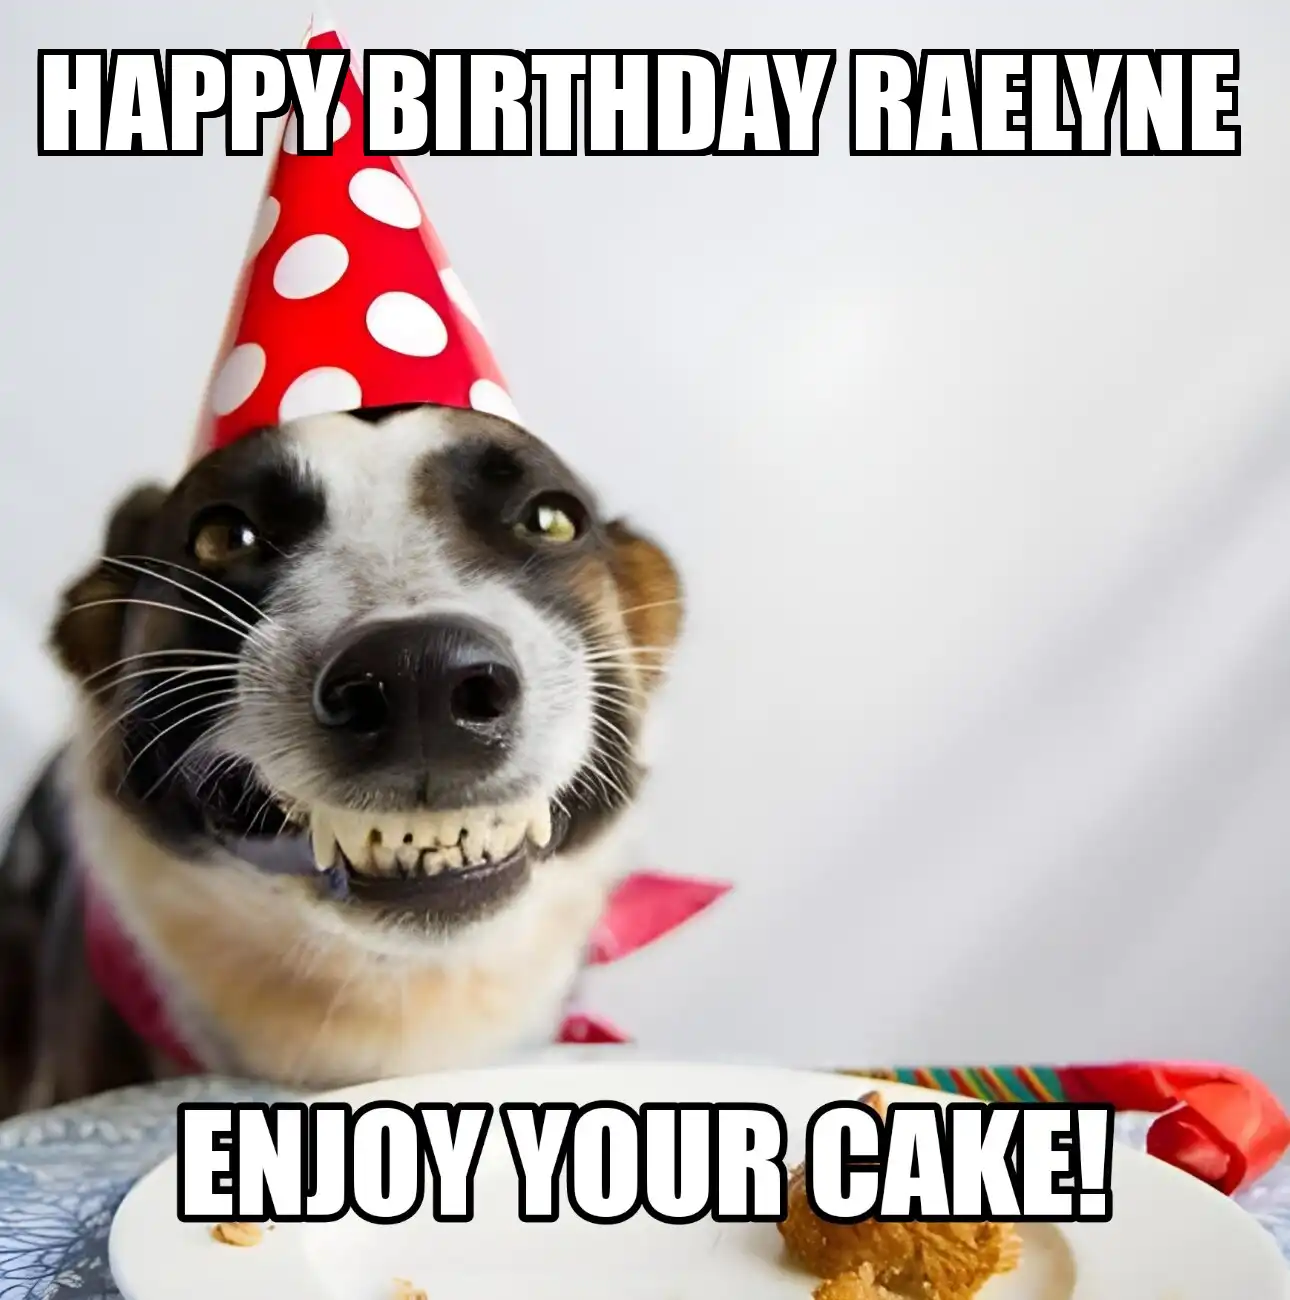 Happy Birthday Raelyne Enjoy Your Cake Dog Meme